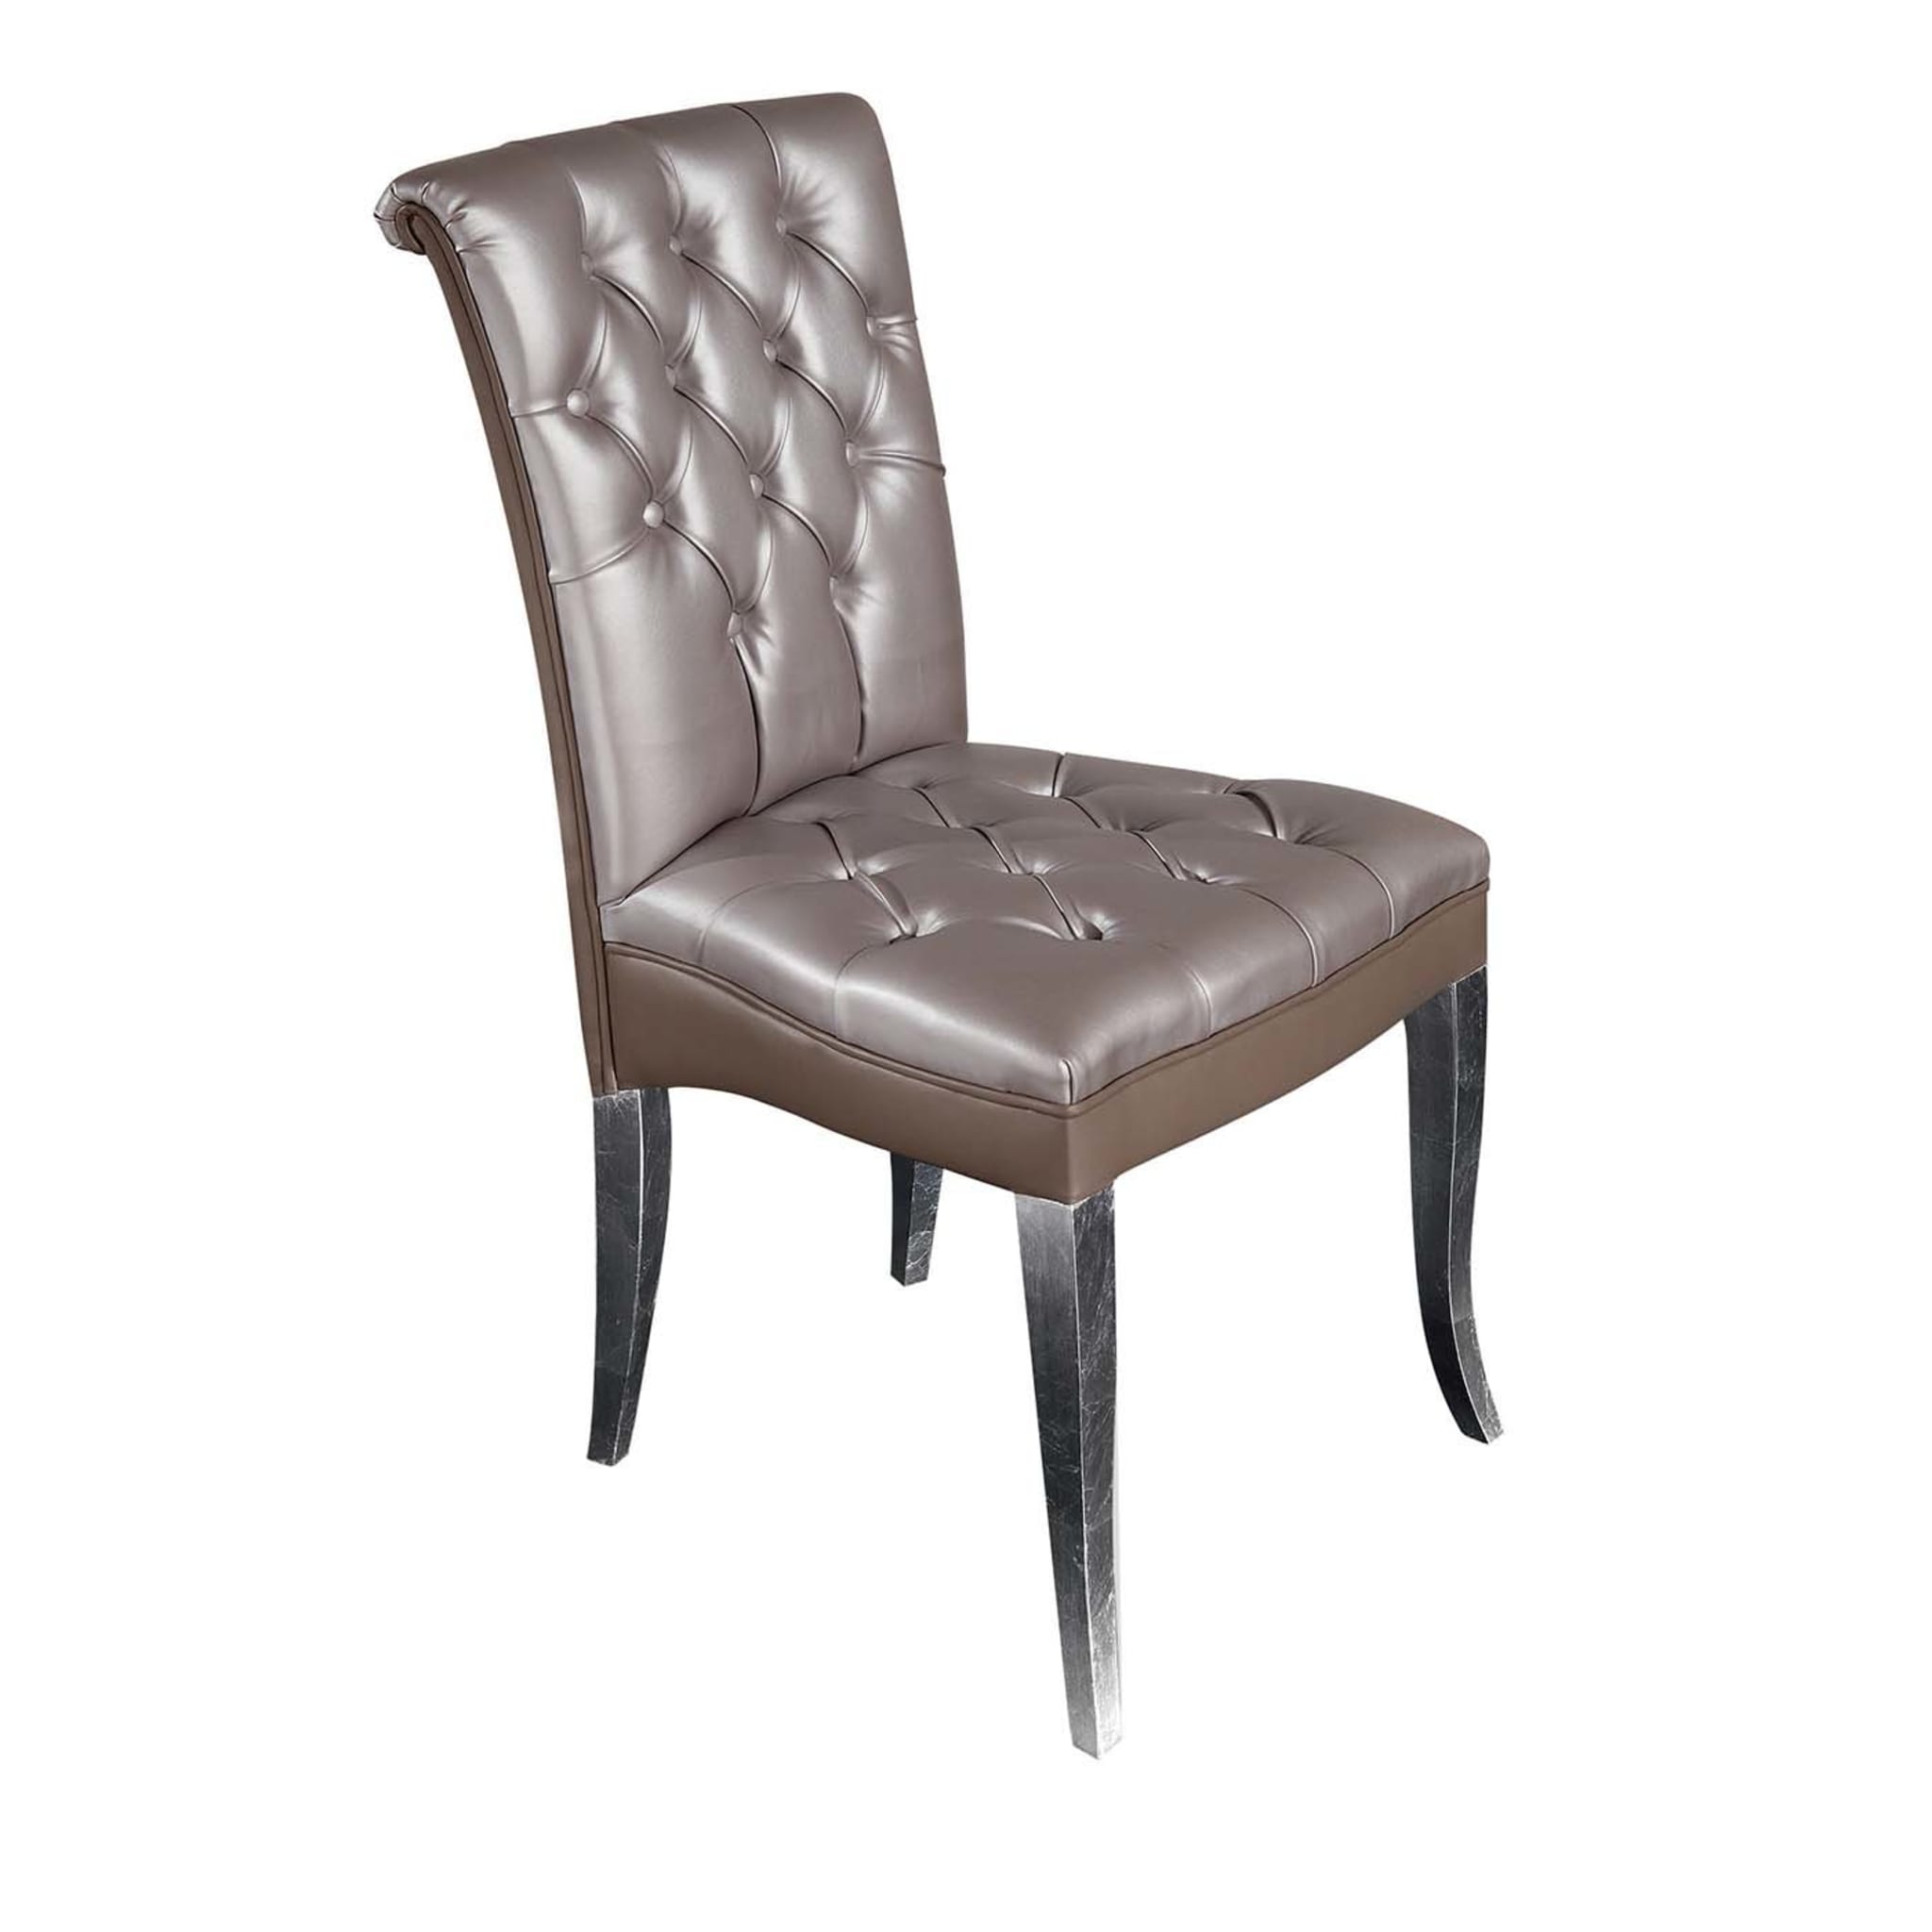 Art Deco Chair - Main view